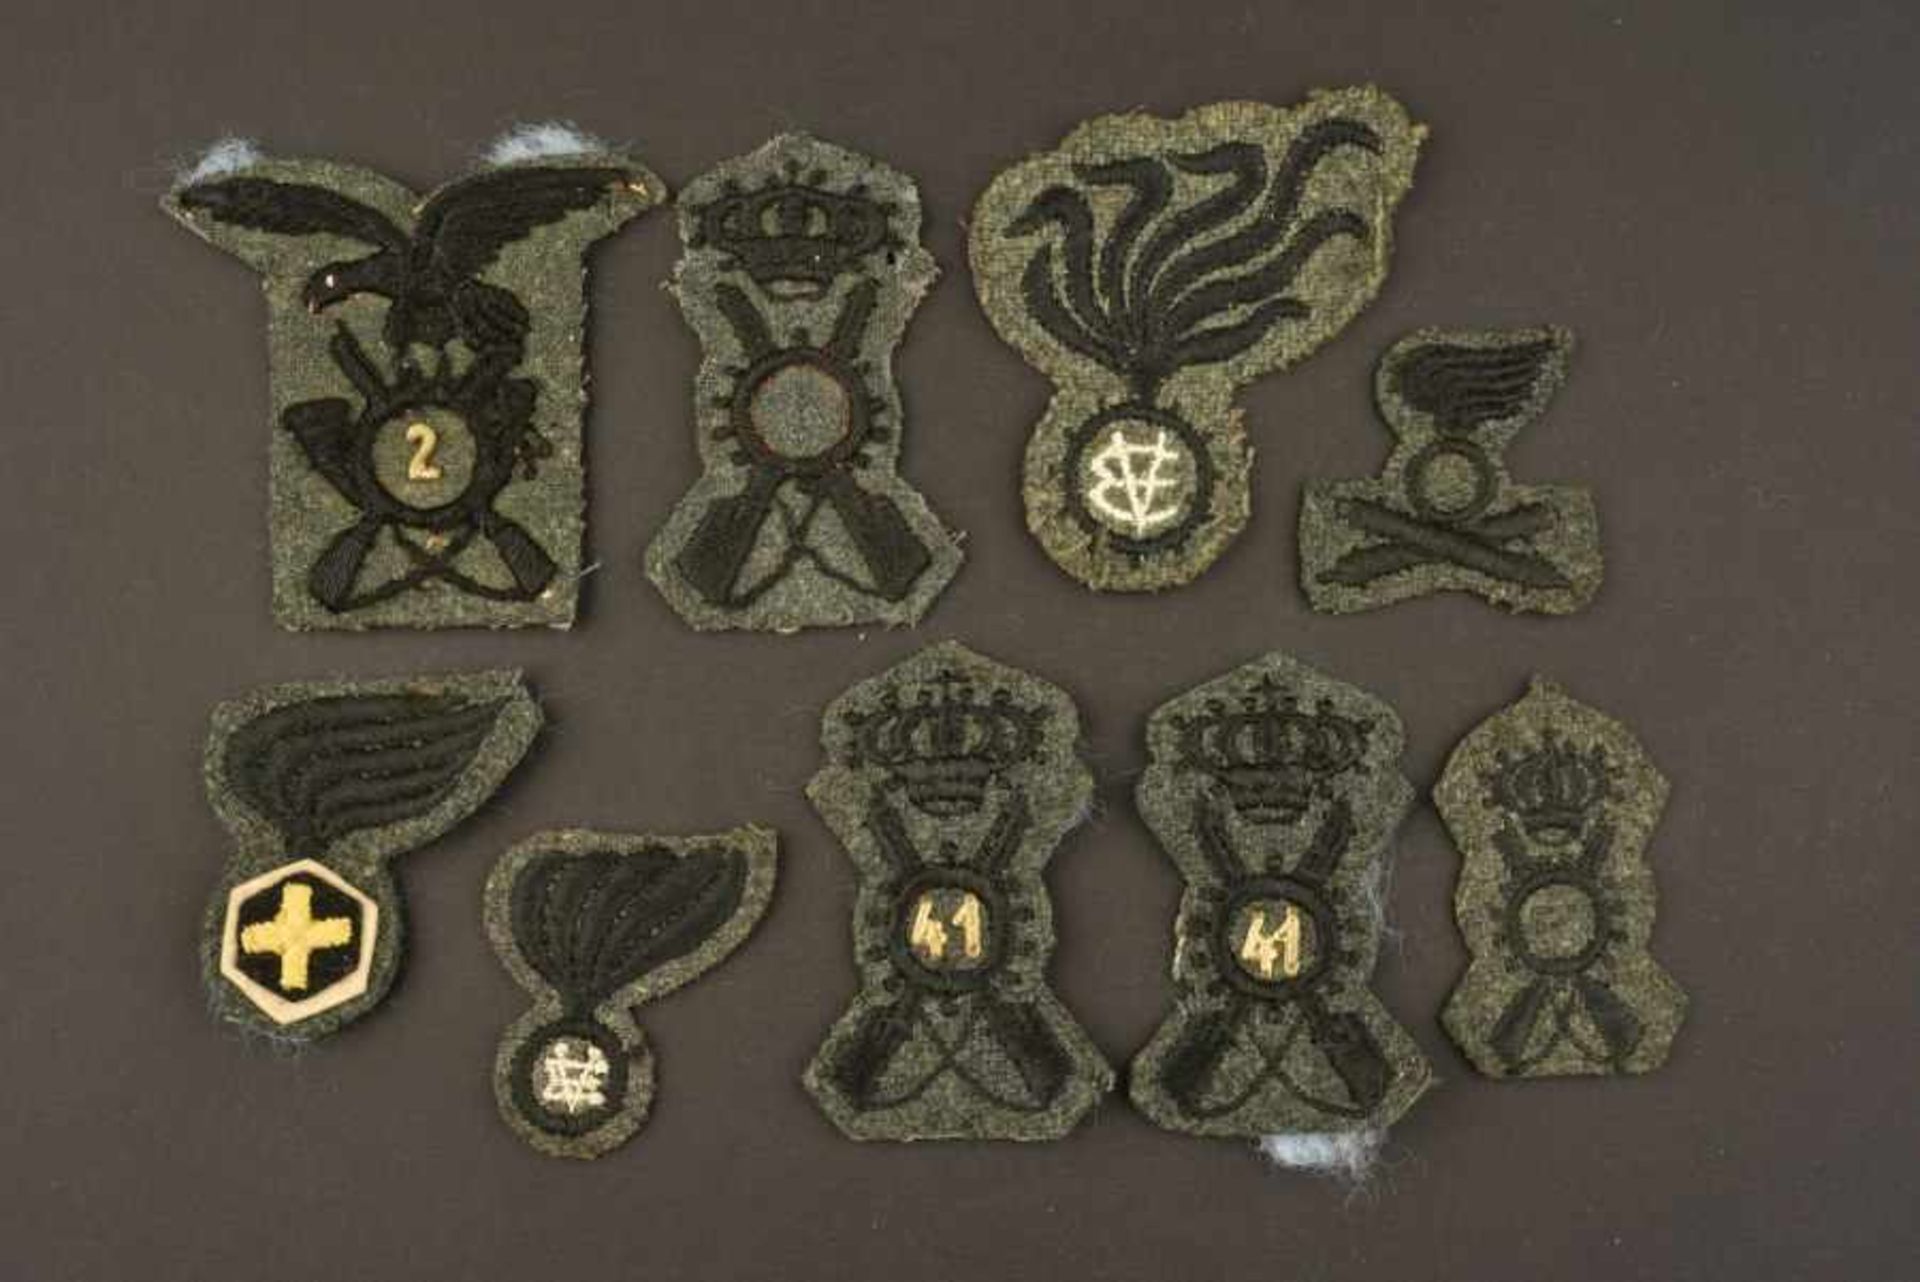 Insignes de l'armée royale italienneComprenant neuf insignes de coiffure troupe. A noter une